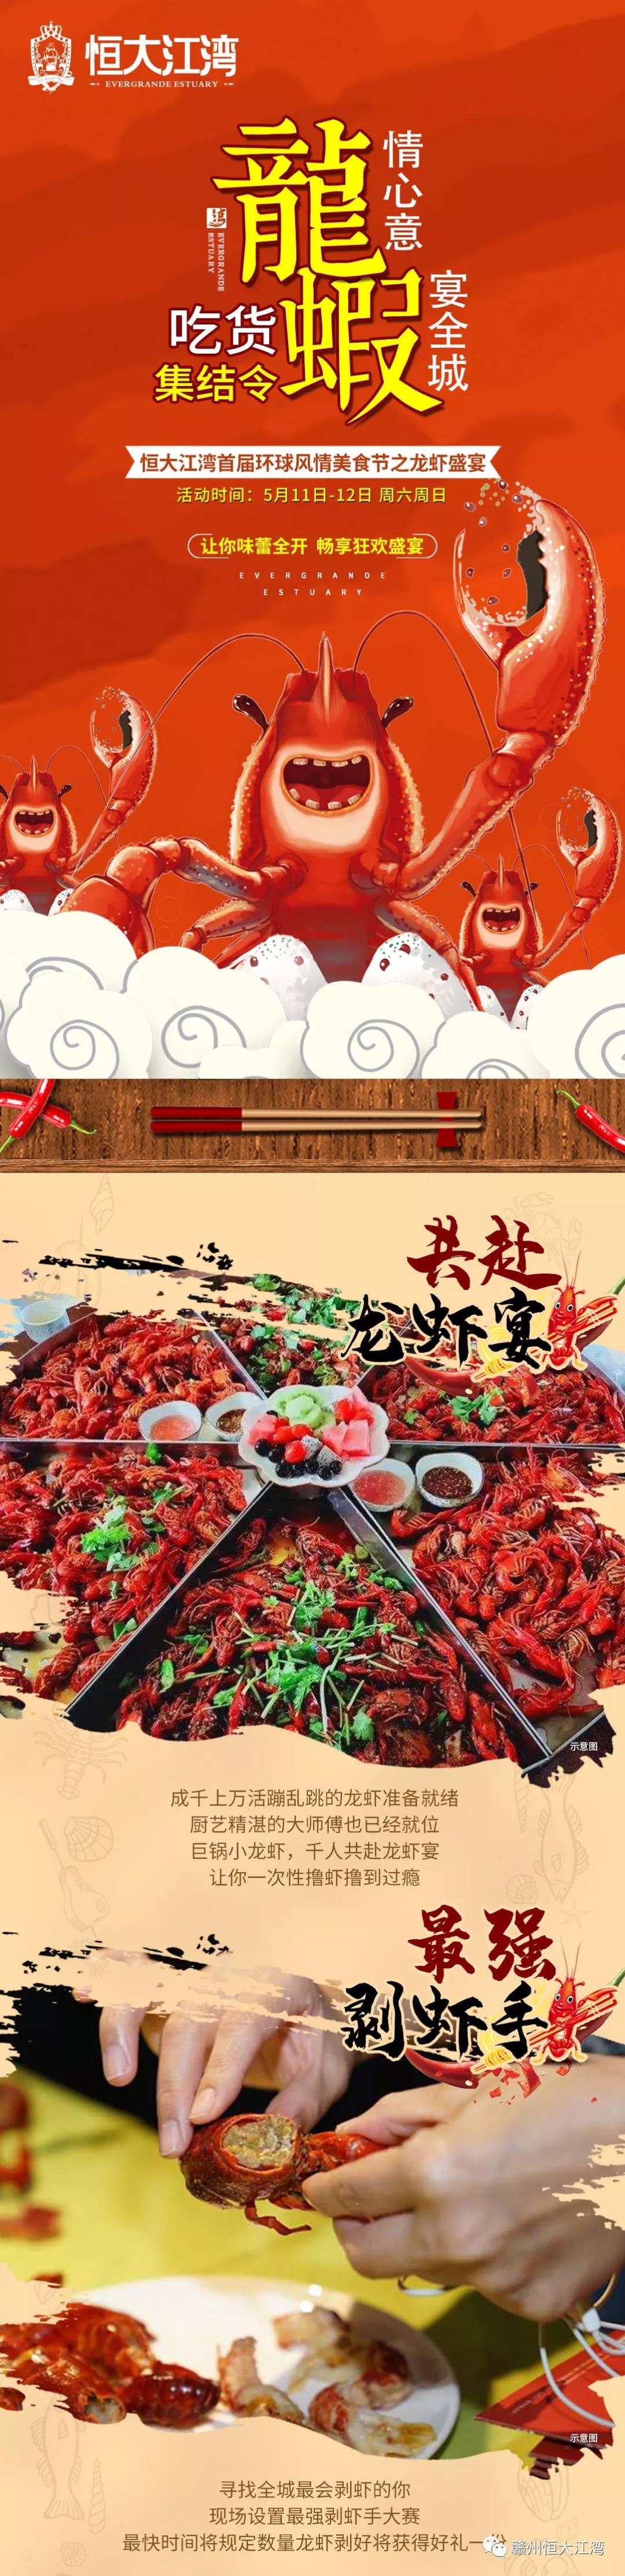 贛州恒大江灣環球美食 龍蝦盛宴熱辣來襲-中國網地産